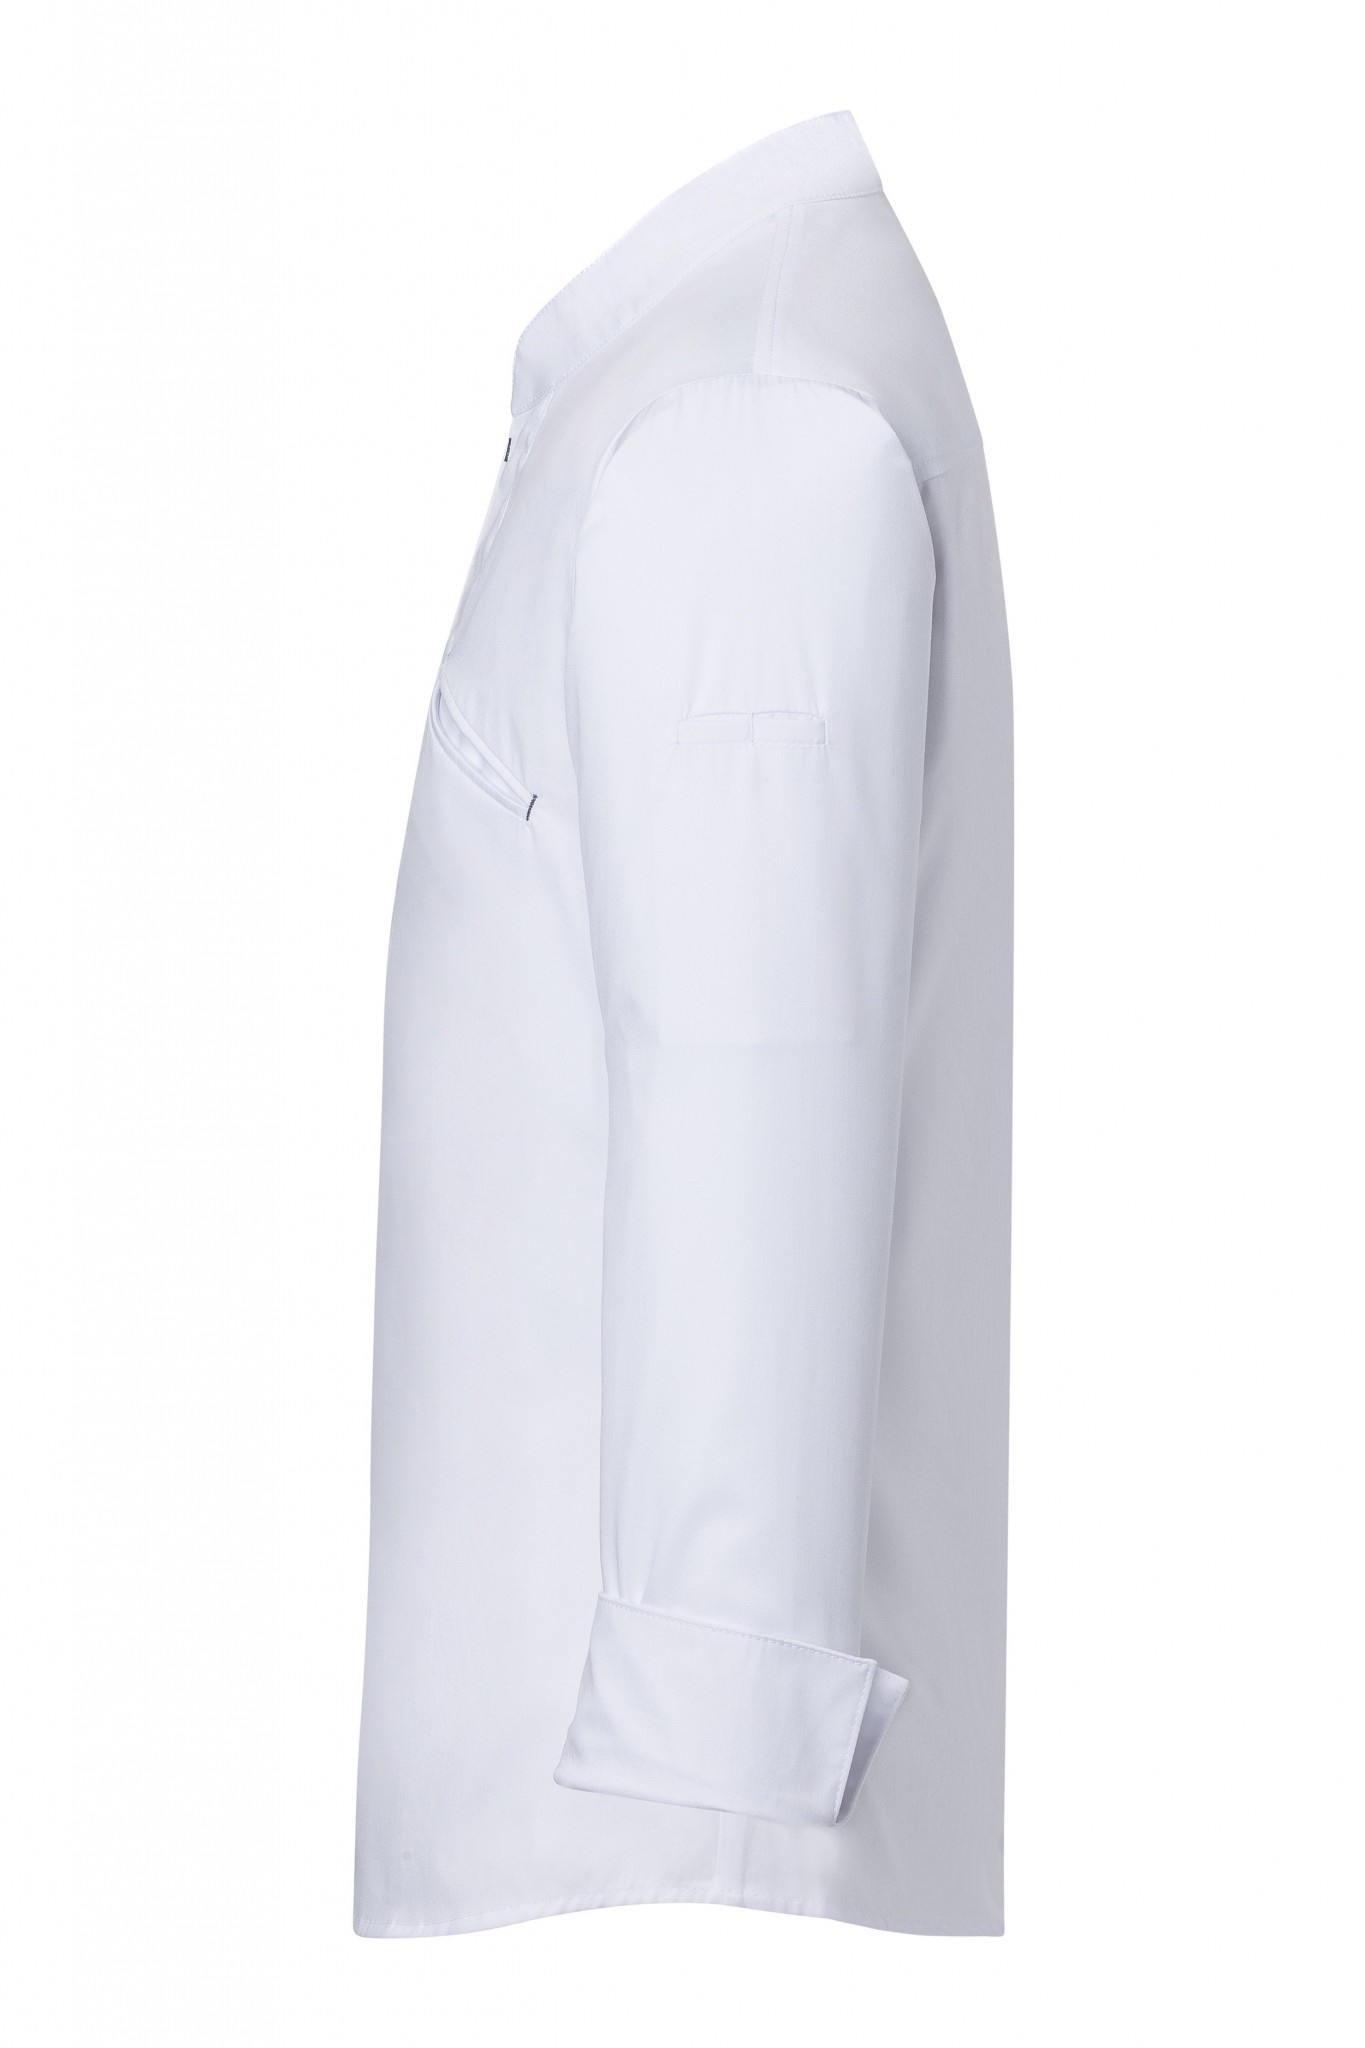 Kochjacke Modern Touch | Weiß | 50% Polyester / 50% Baumwolle | Erhältlich in 10 Größen